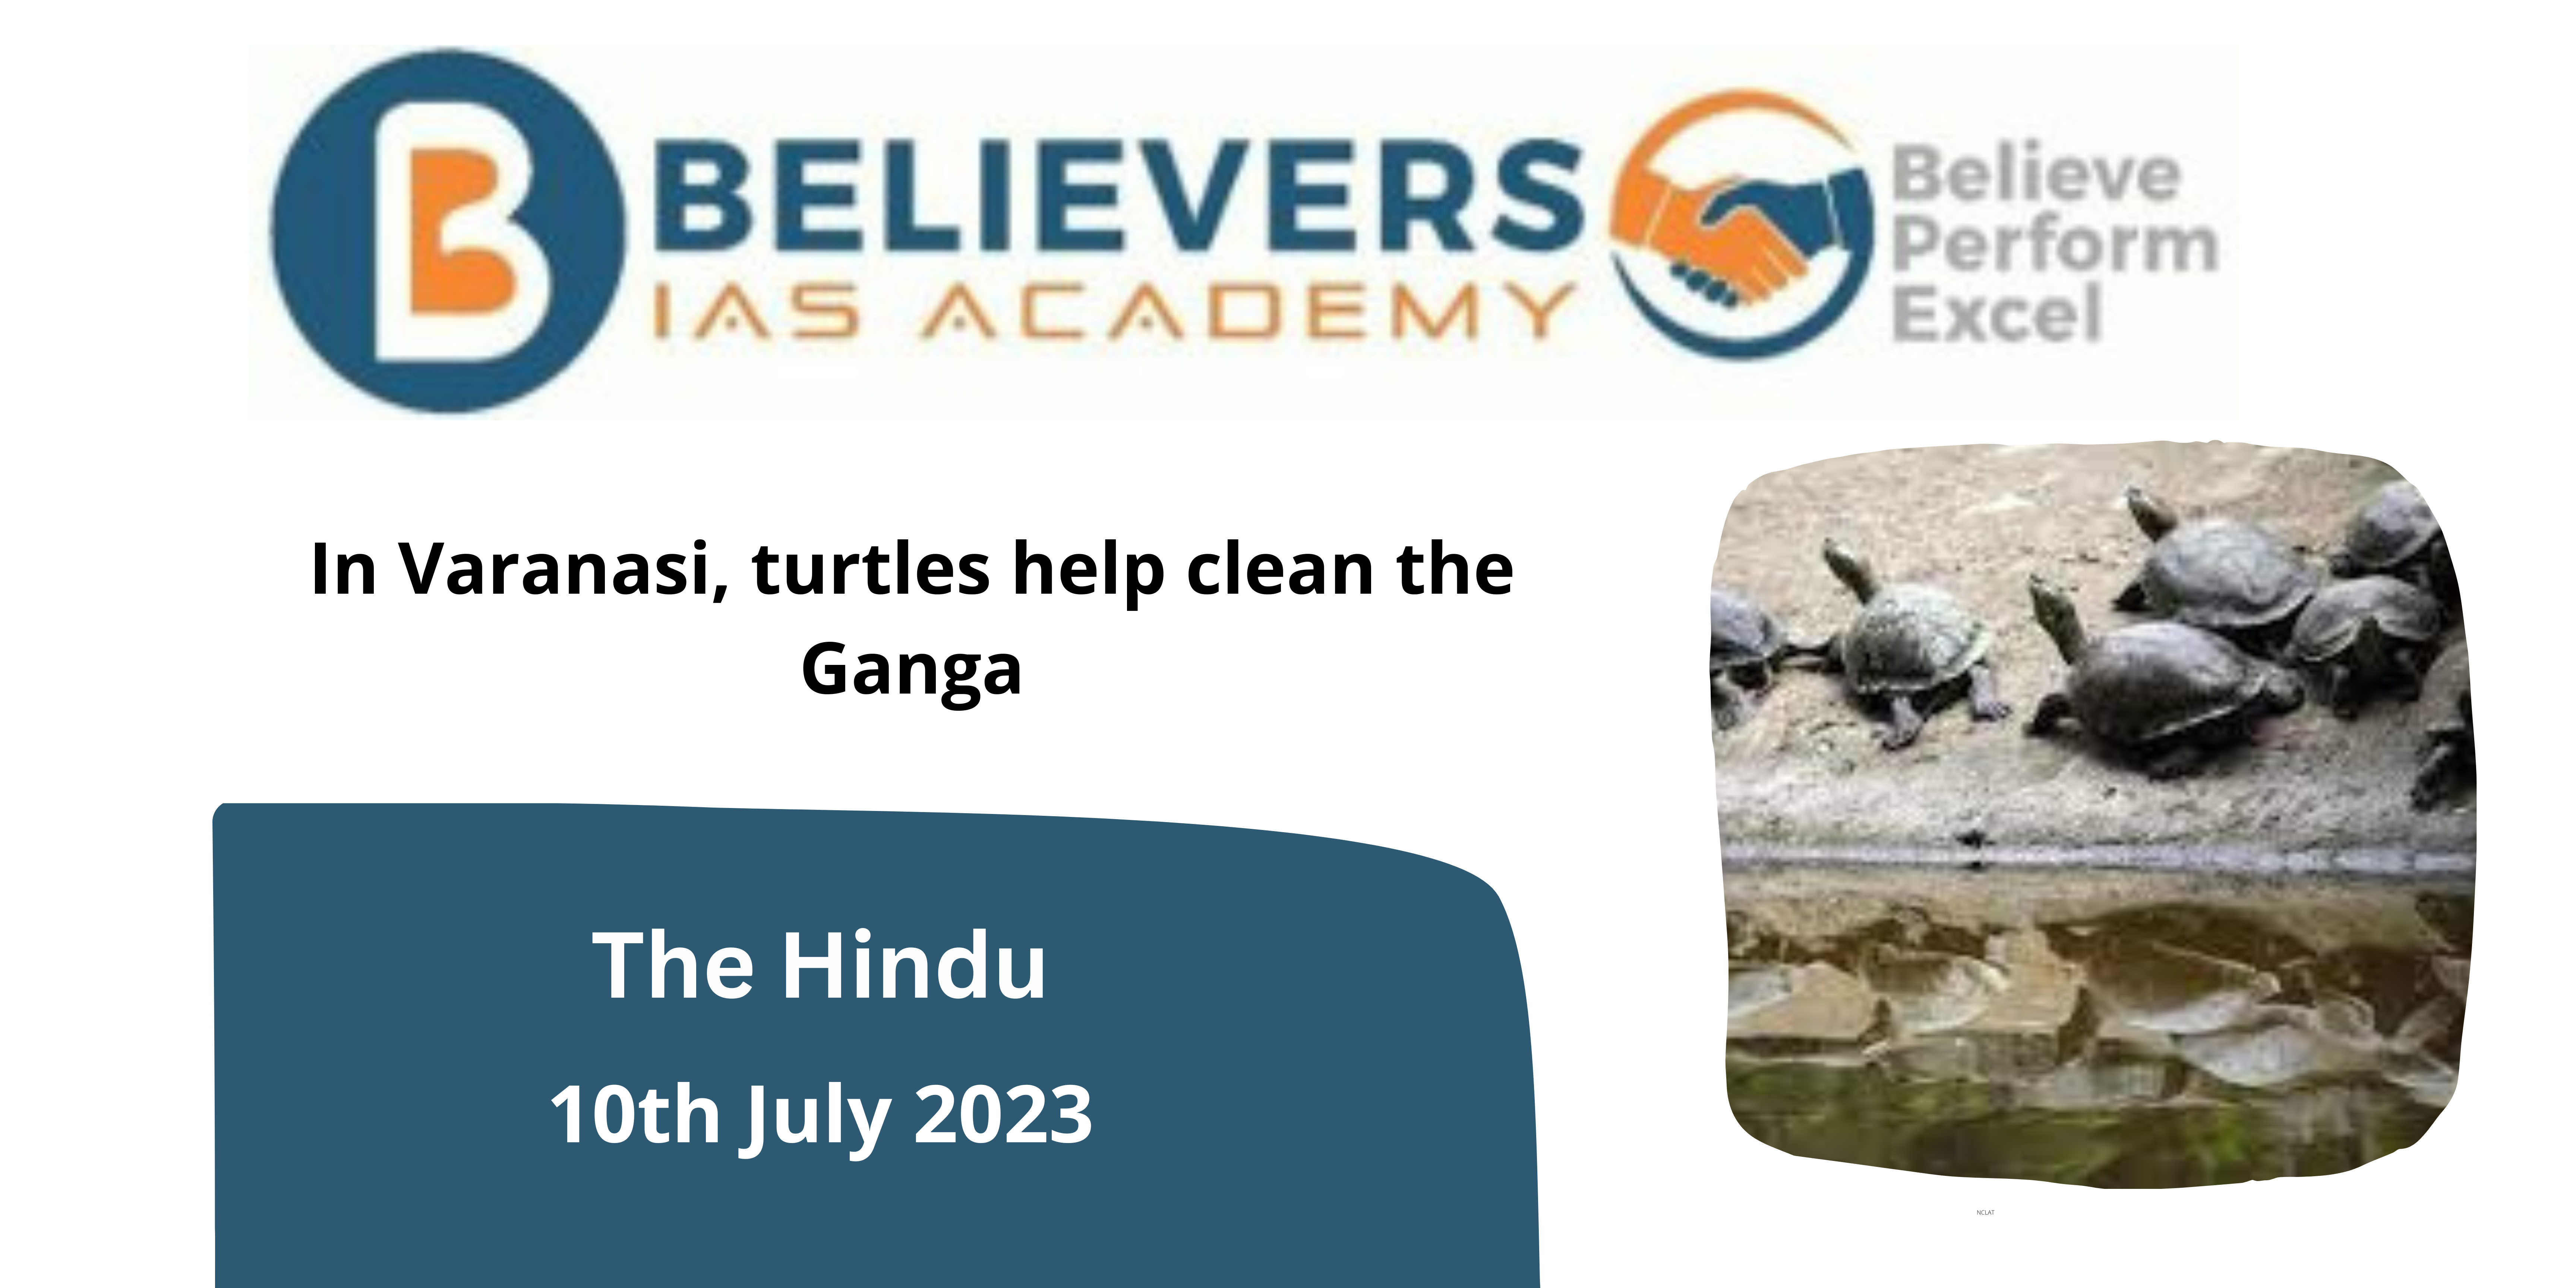 In Varanasi, turtles help clean the Ganga